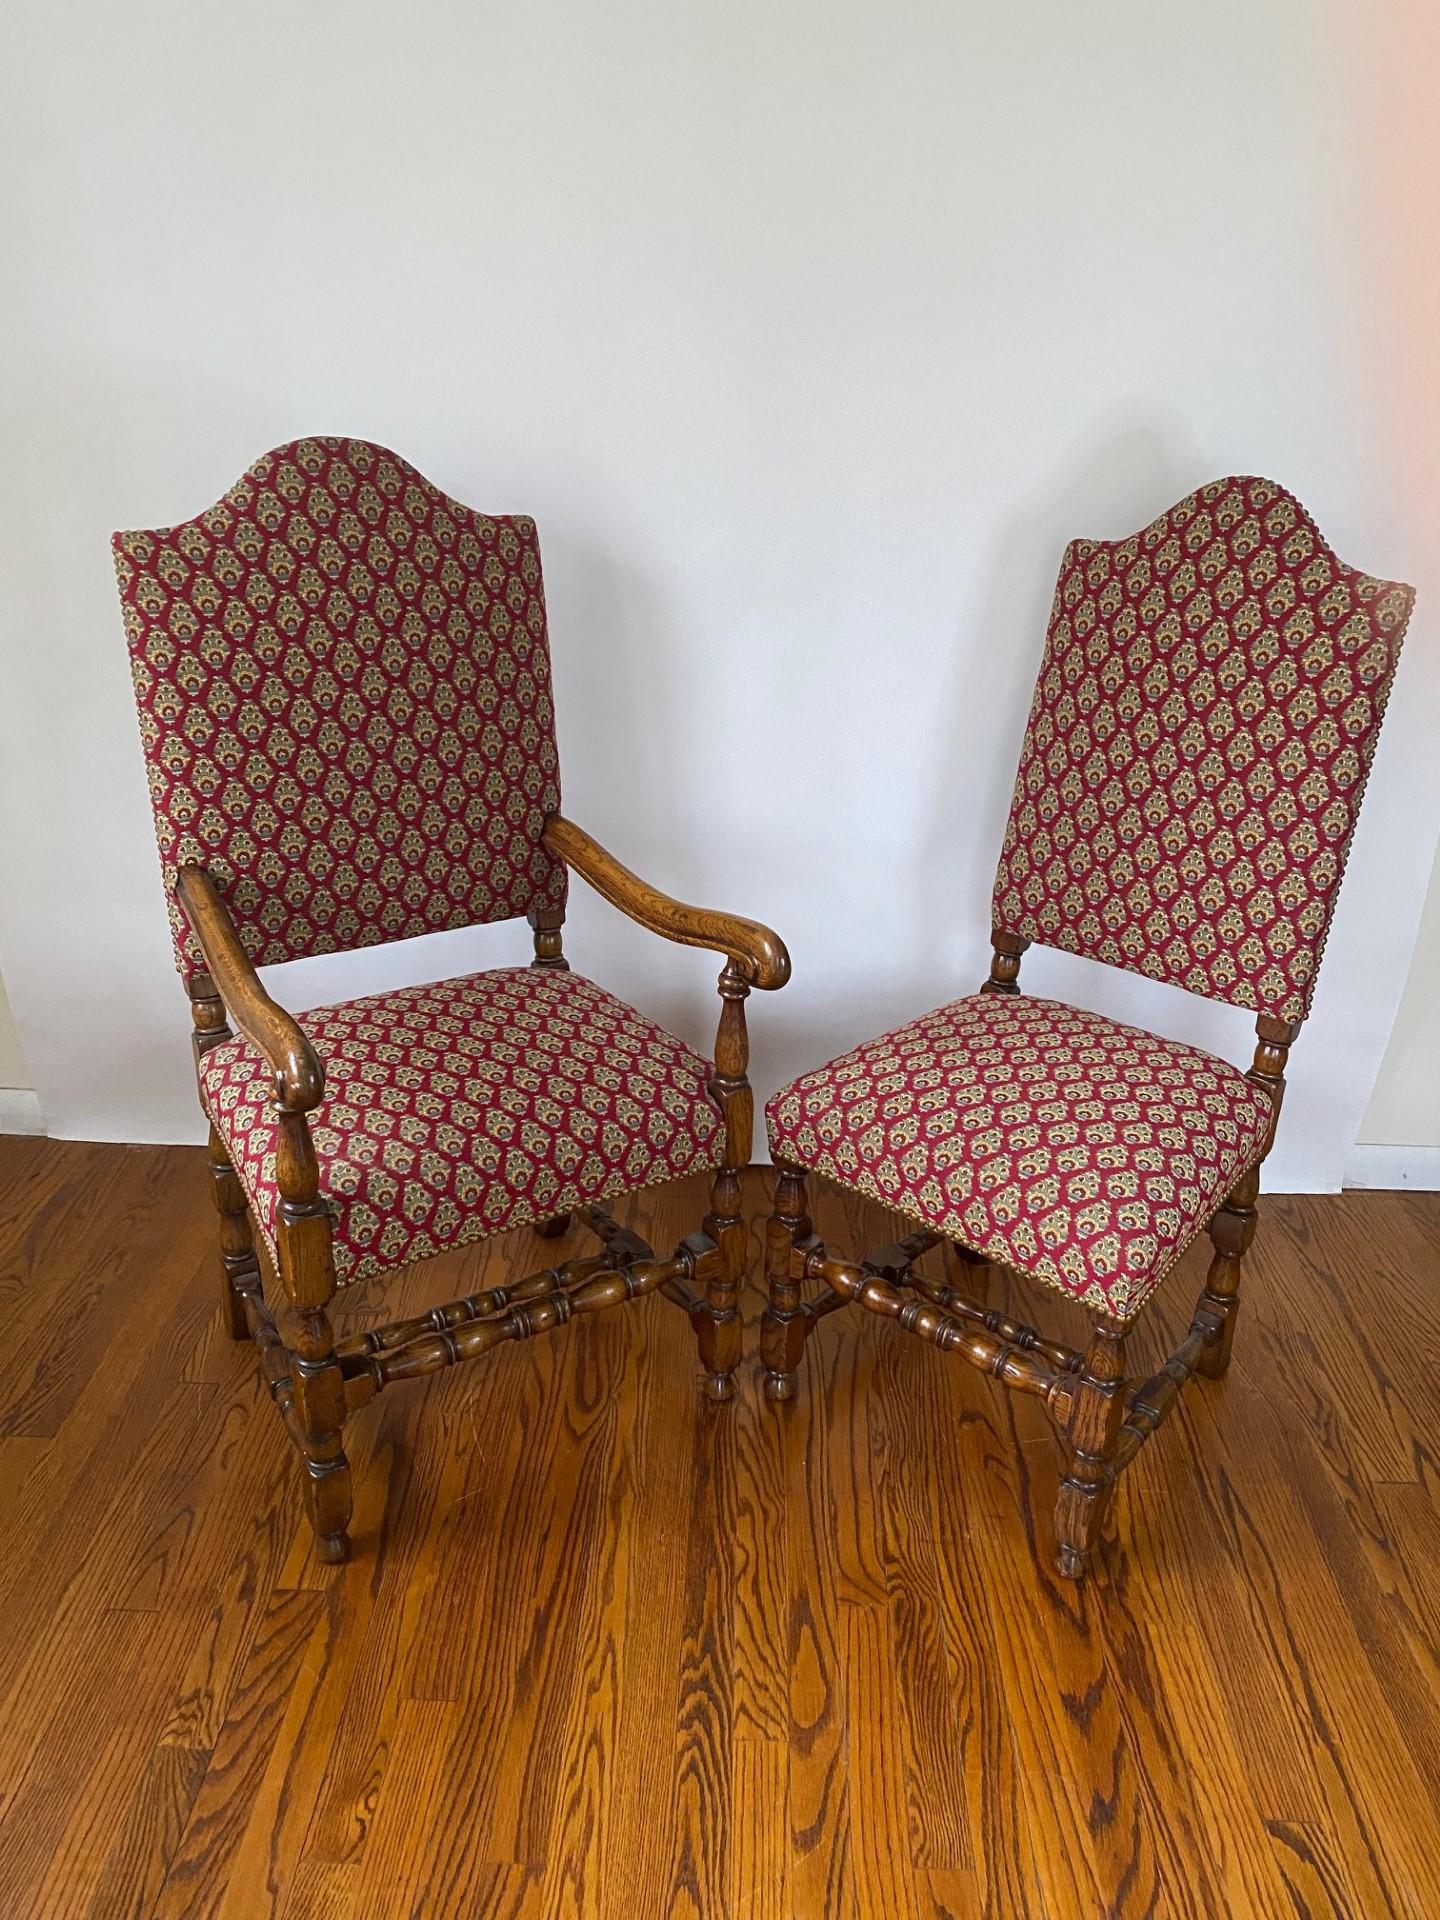 Diese  Die neuen englischen Esszimmerstühle im Tudor-Stil verfügen über einen stabilen Rahmen aus massivem Eichenholz, das für seine Haltbarkeit und zeitlose Schönheit bekannt ist. Die natürliche Maserung des Holzes verleiht dem Stuhl Wärme und